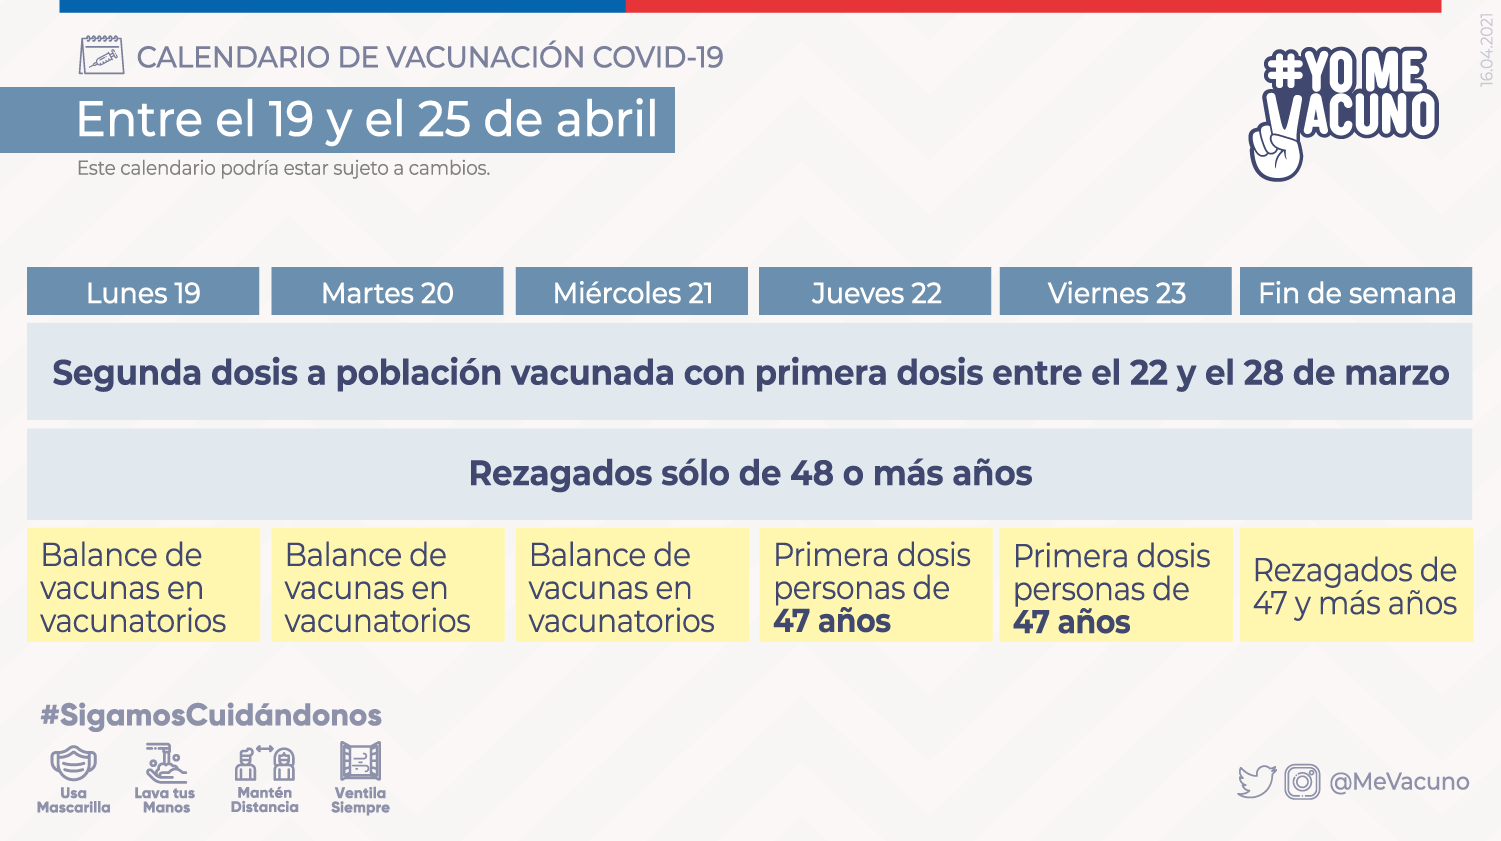 Calendario de vacunación COVID-19 - Semana del 19 al 25 de abril 2021